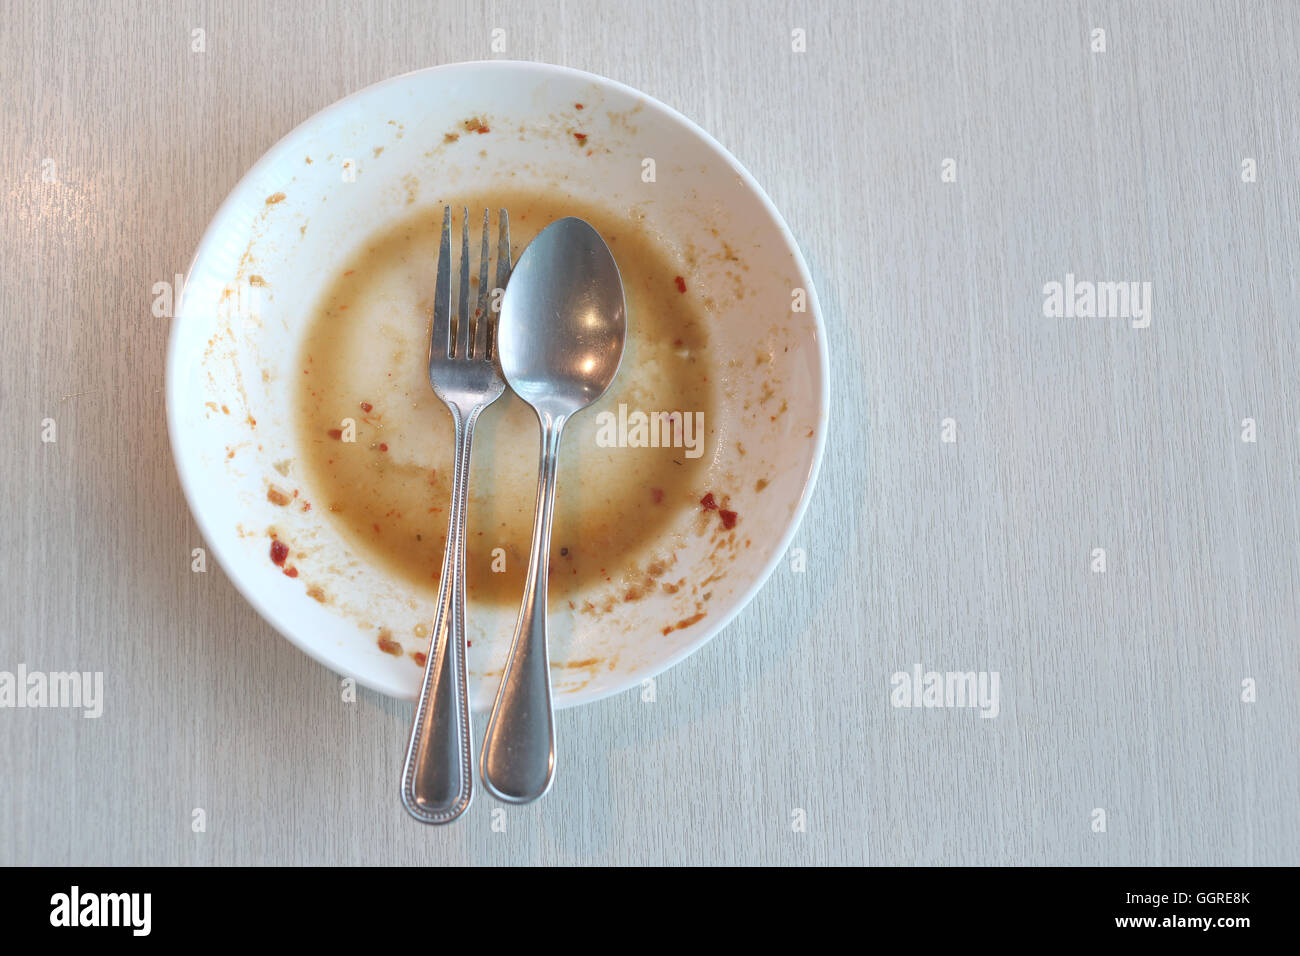 Piatto bianco sporco dopo aver messo un cibo e finito di mangiare sul tavolo del ristorante. Foto Stock